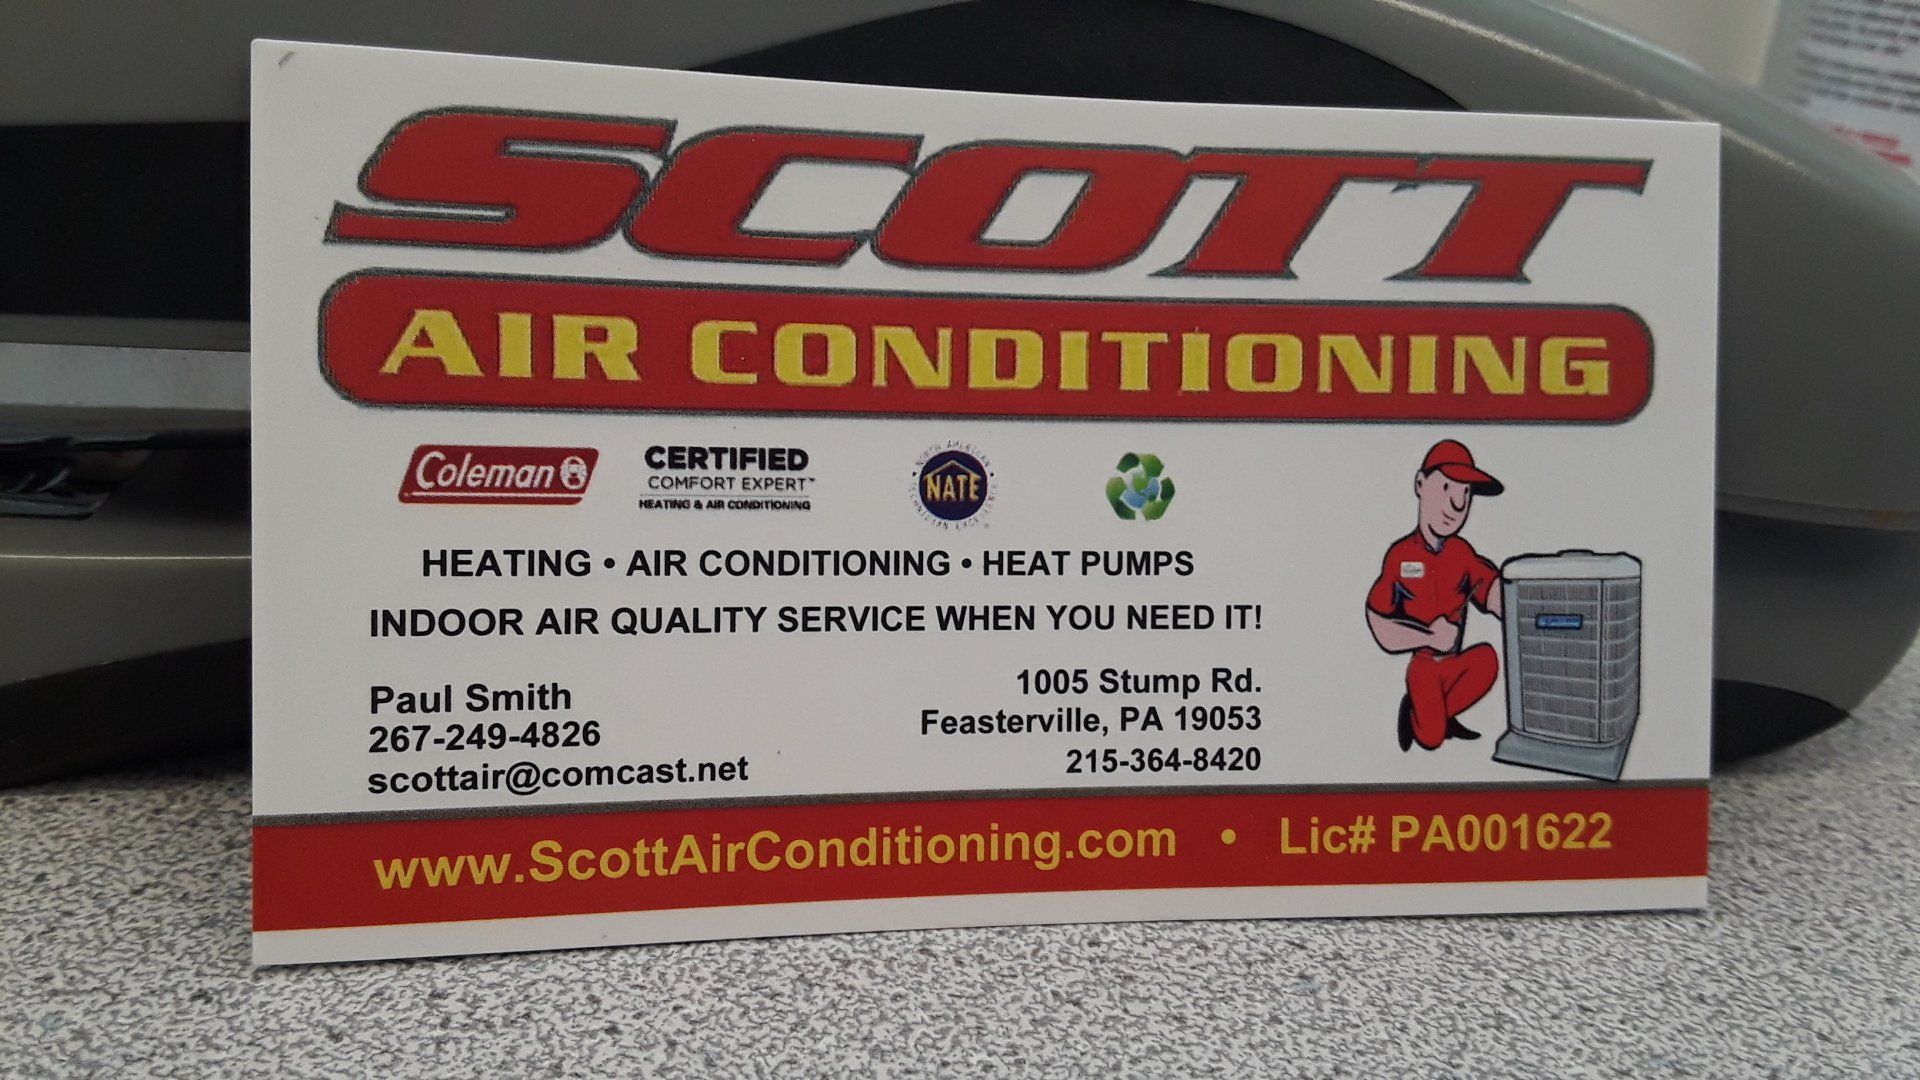 Scott Air Conditioning